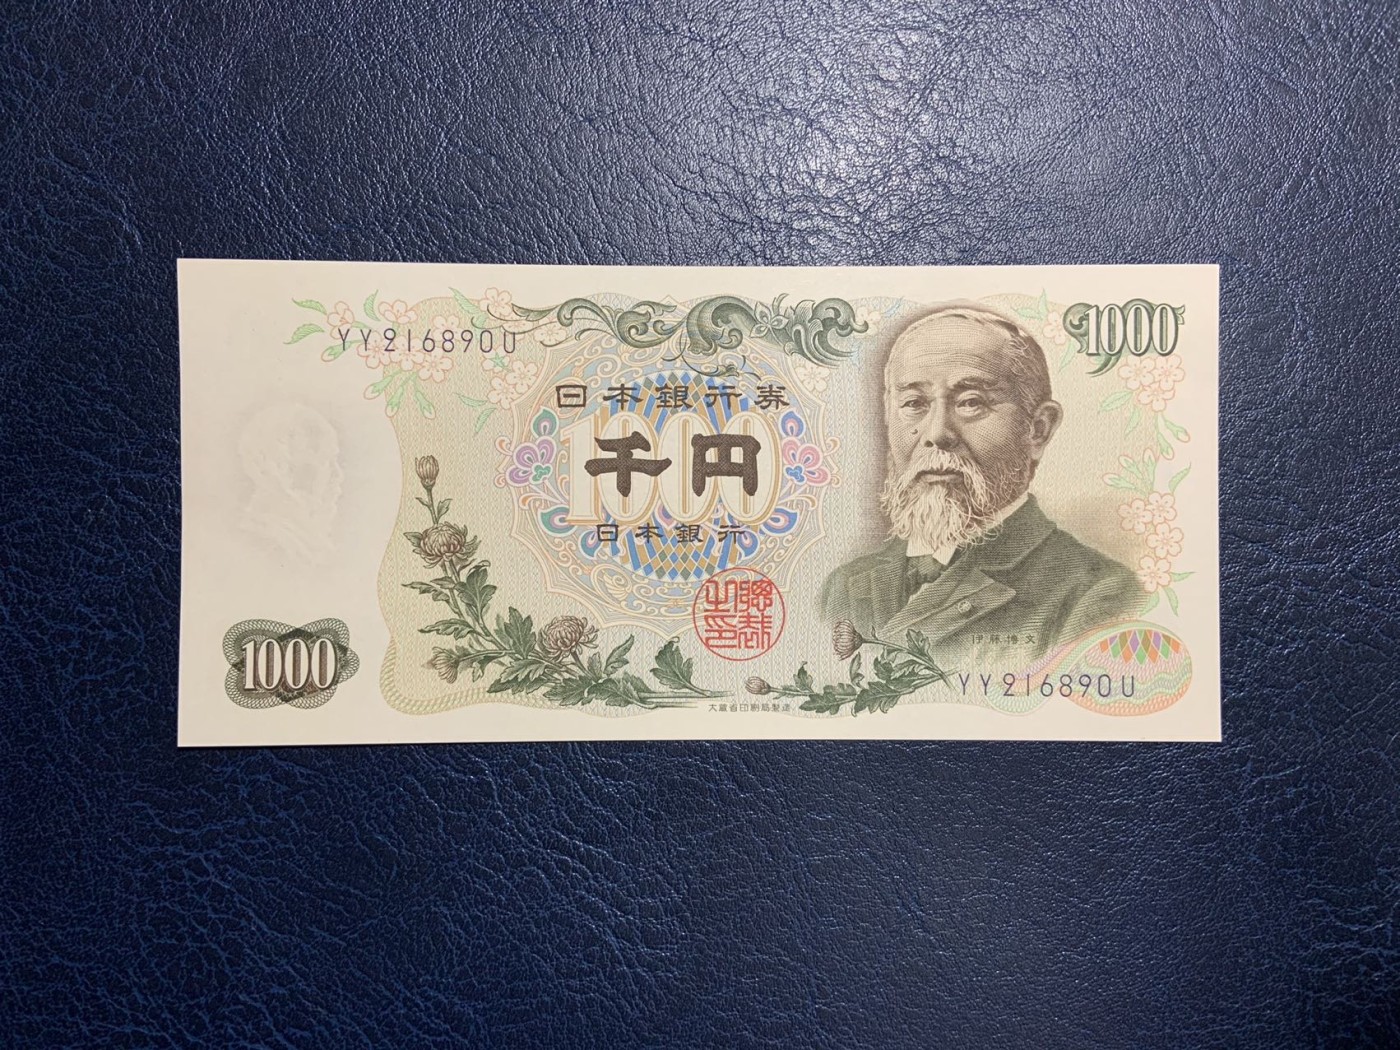 伊藤博文 肖像メダル - 旧貨幣/金貨/銀貨/記念硬貨